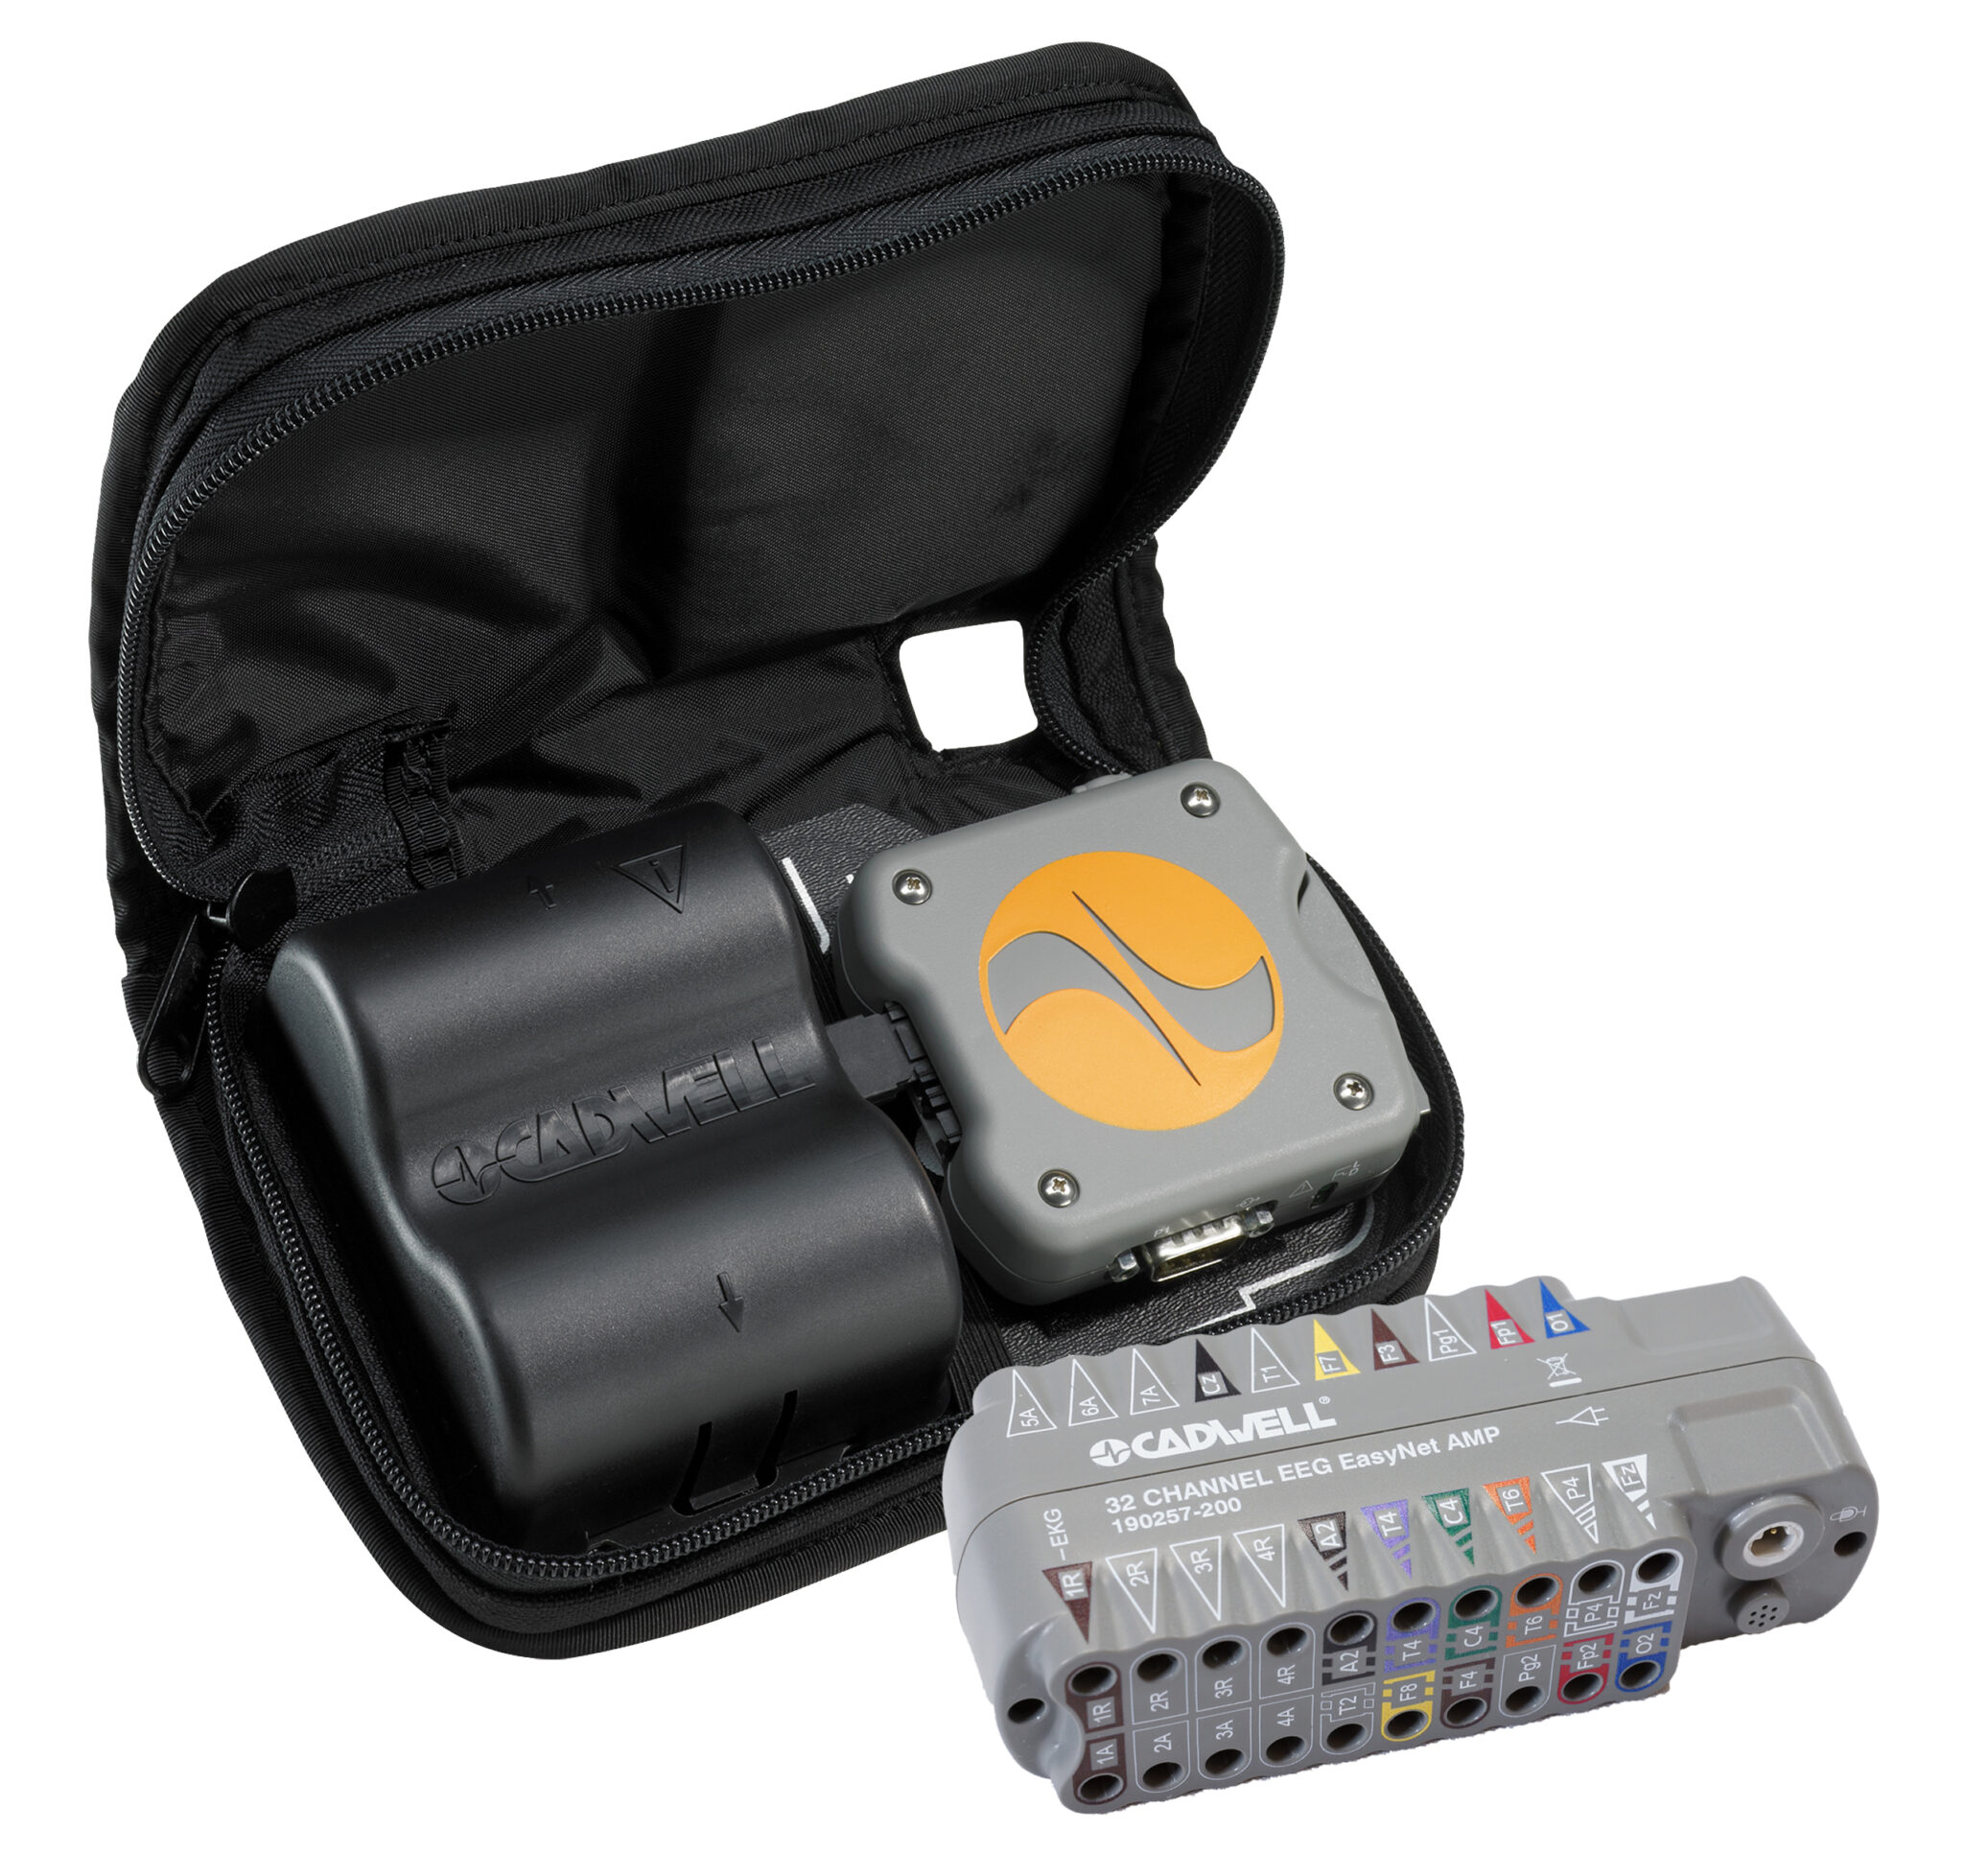 Easy II EEG Ambulatory recorder and amplifier